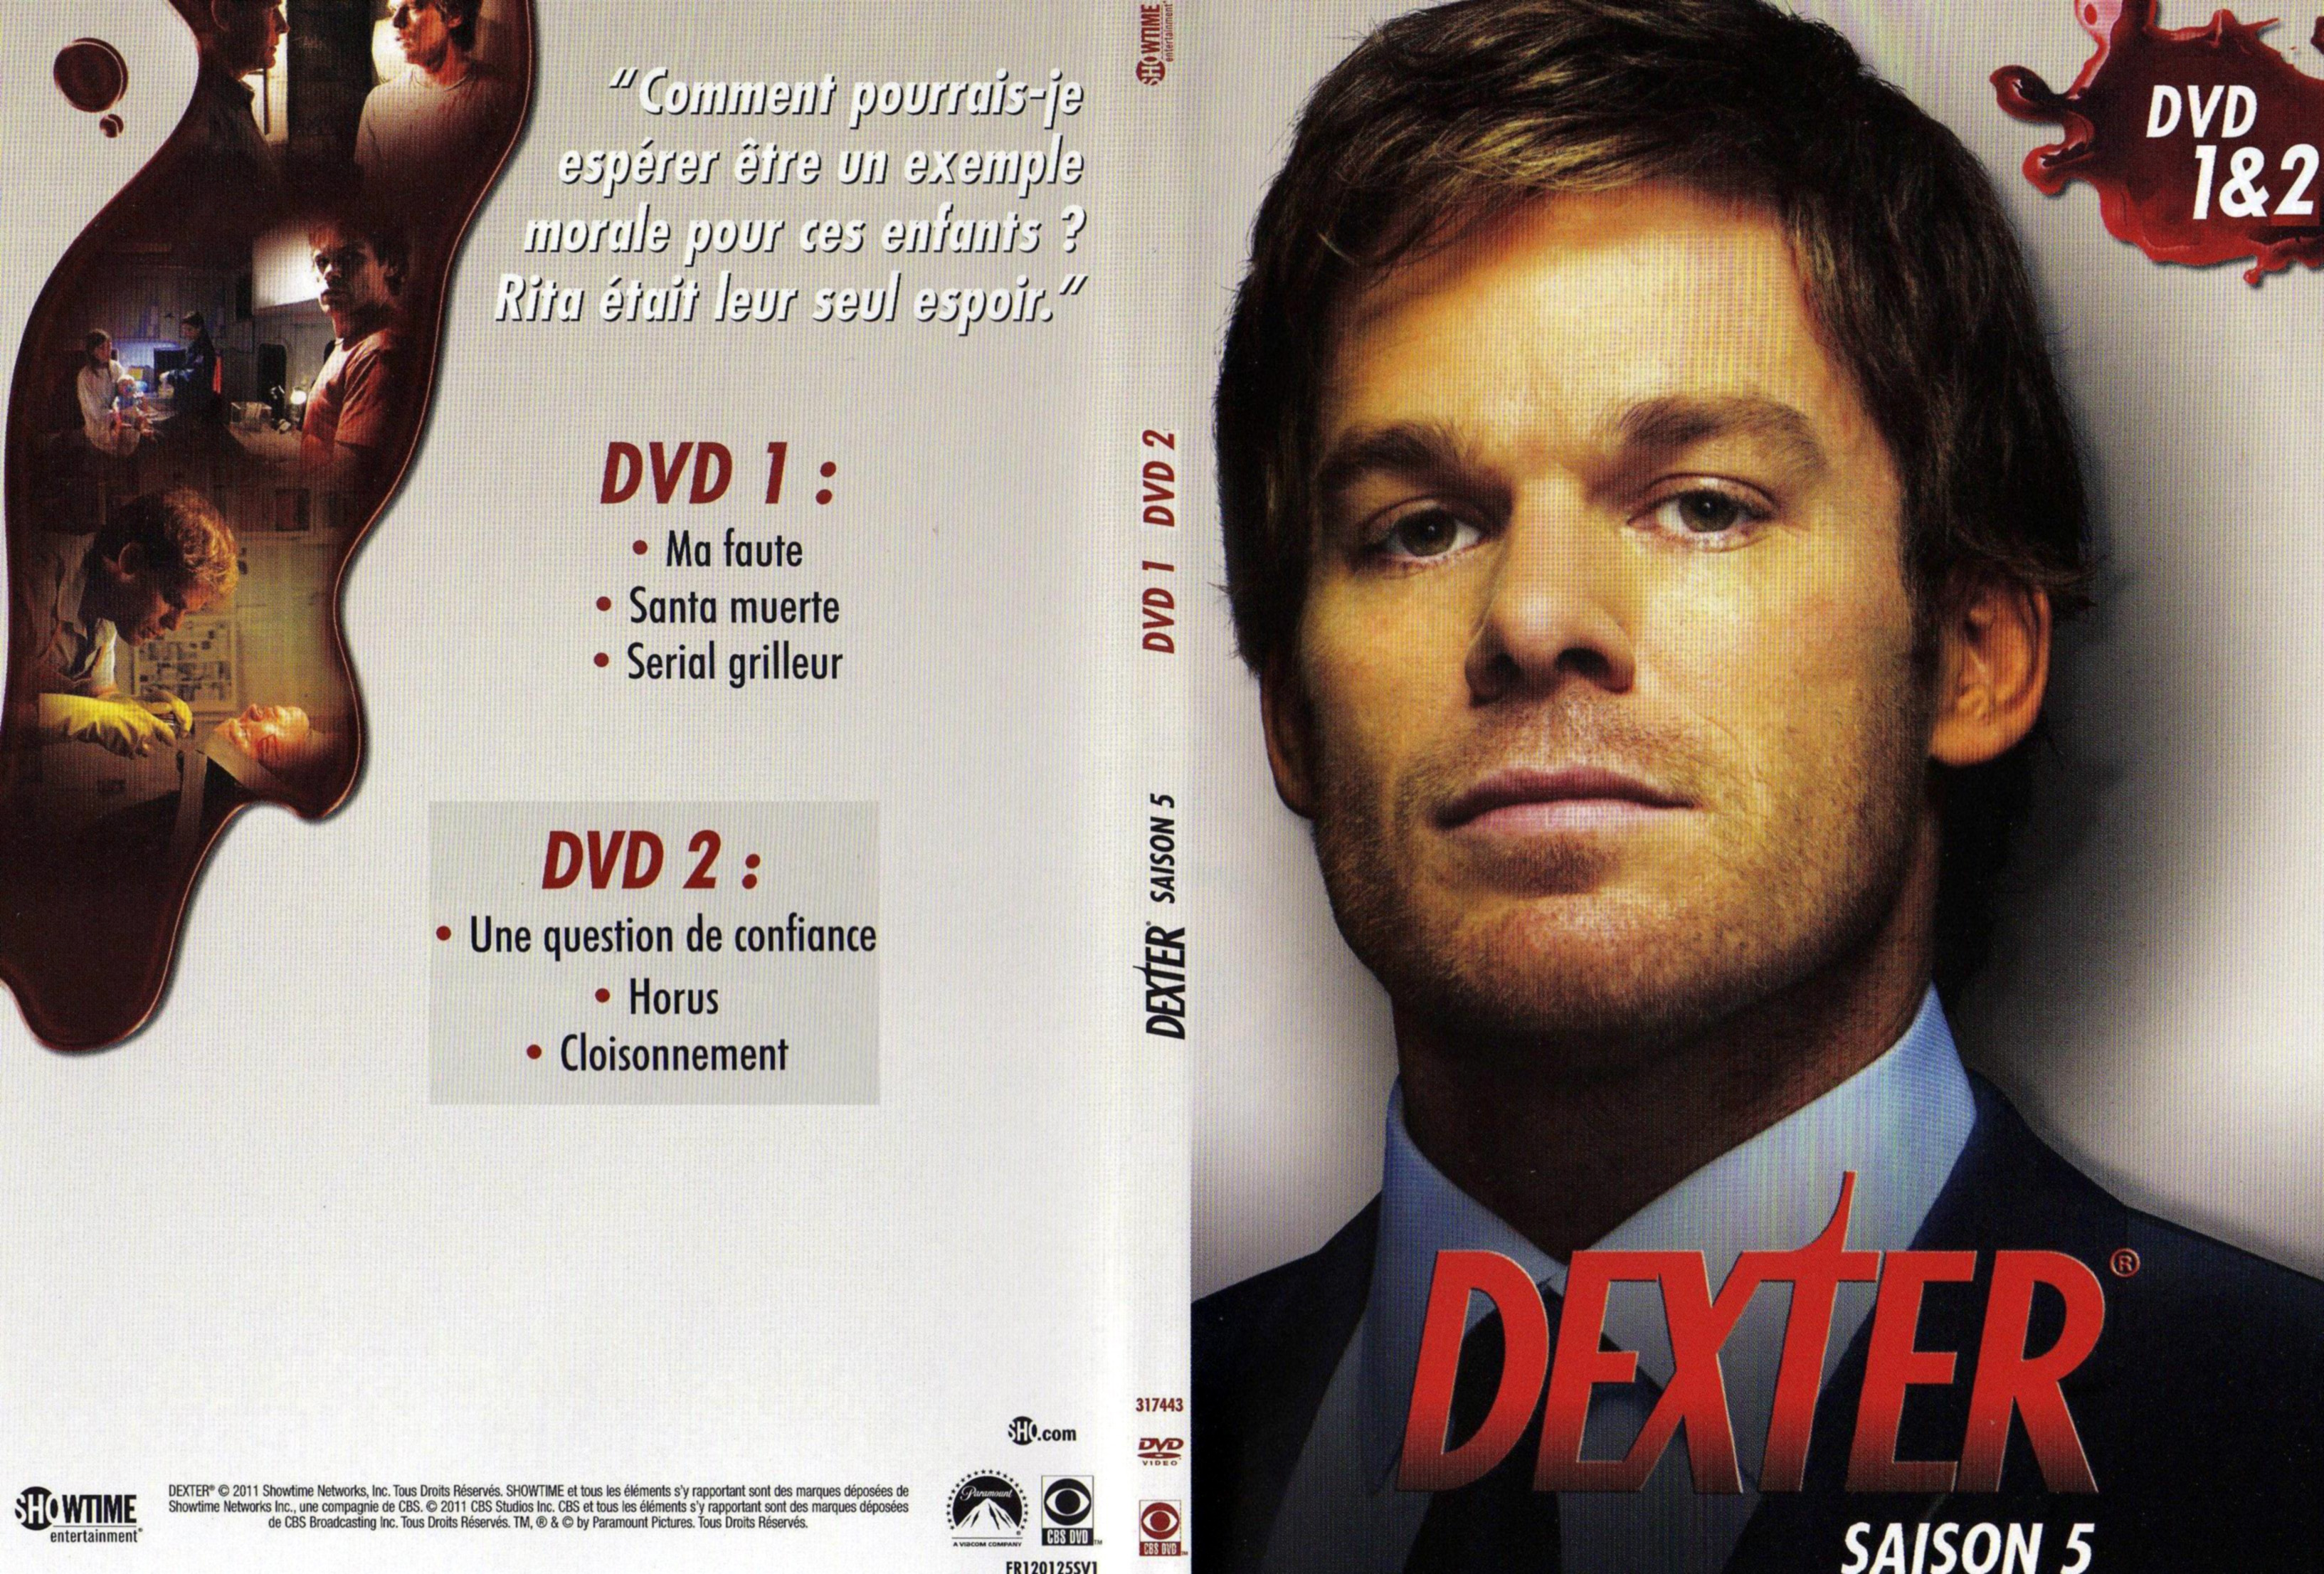 Jaquette DVD Dexter Saison 5 DVD 1